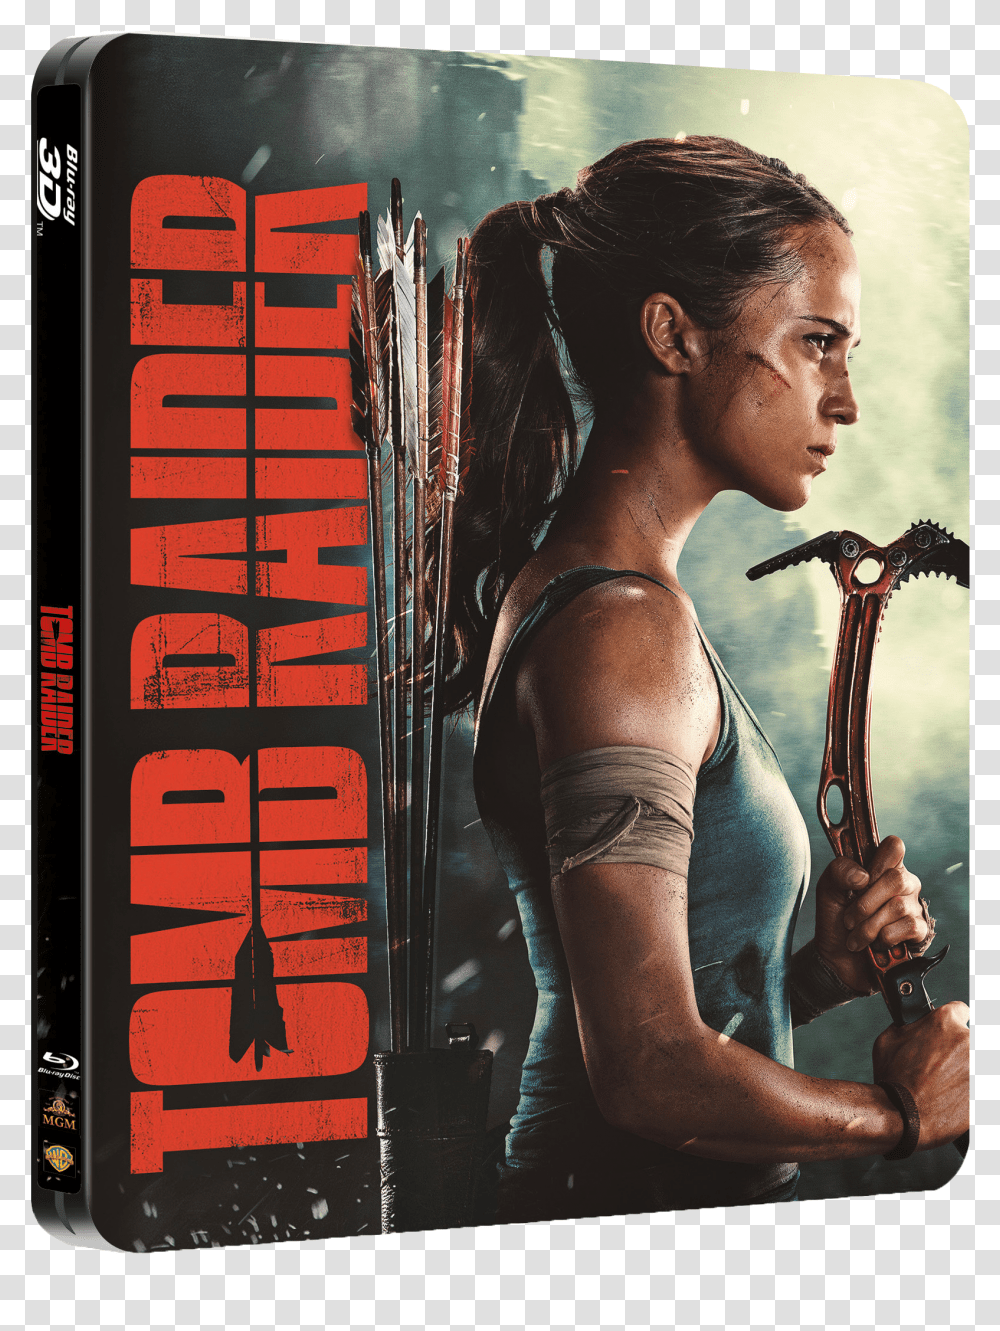 Alicia Vikander Tomb Raider Poster Transparent Png